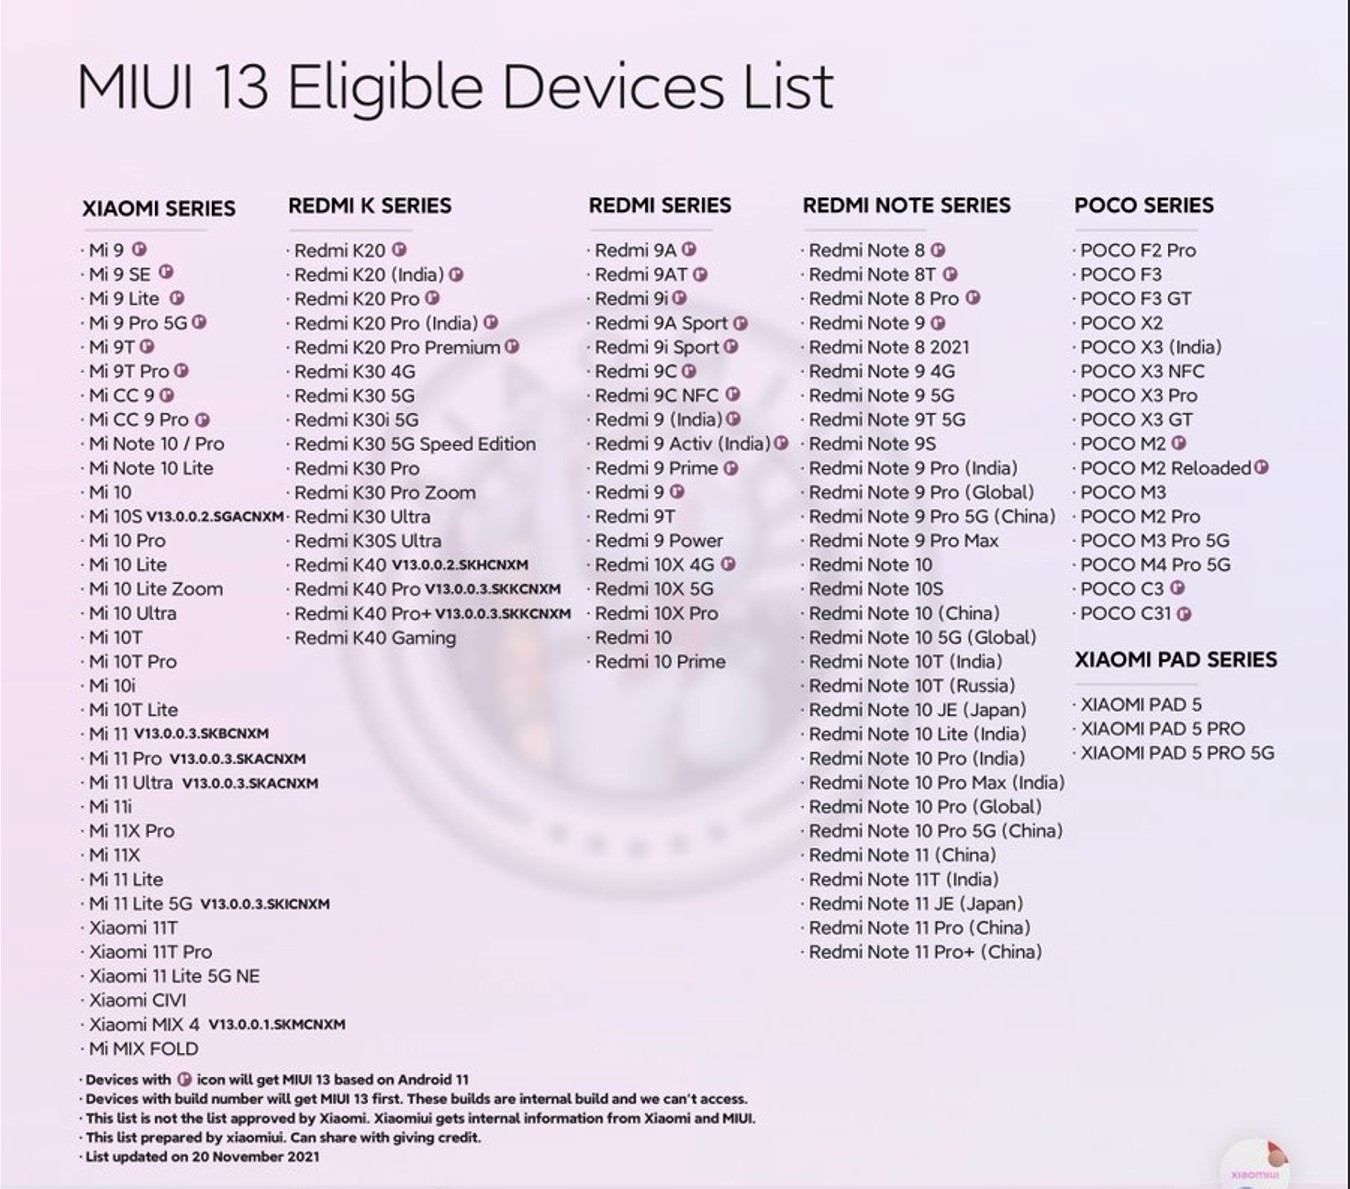 MIUI 13'ün 16 Aralık'ta kullanıcılara sunulması bekleniyor